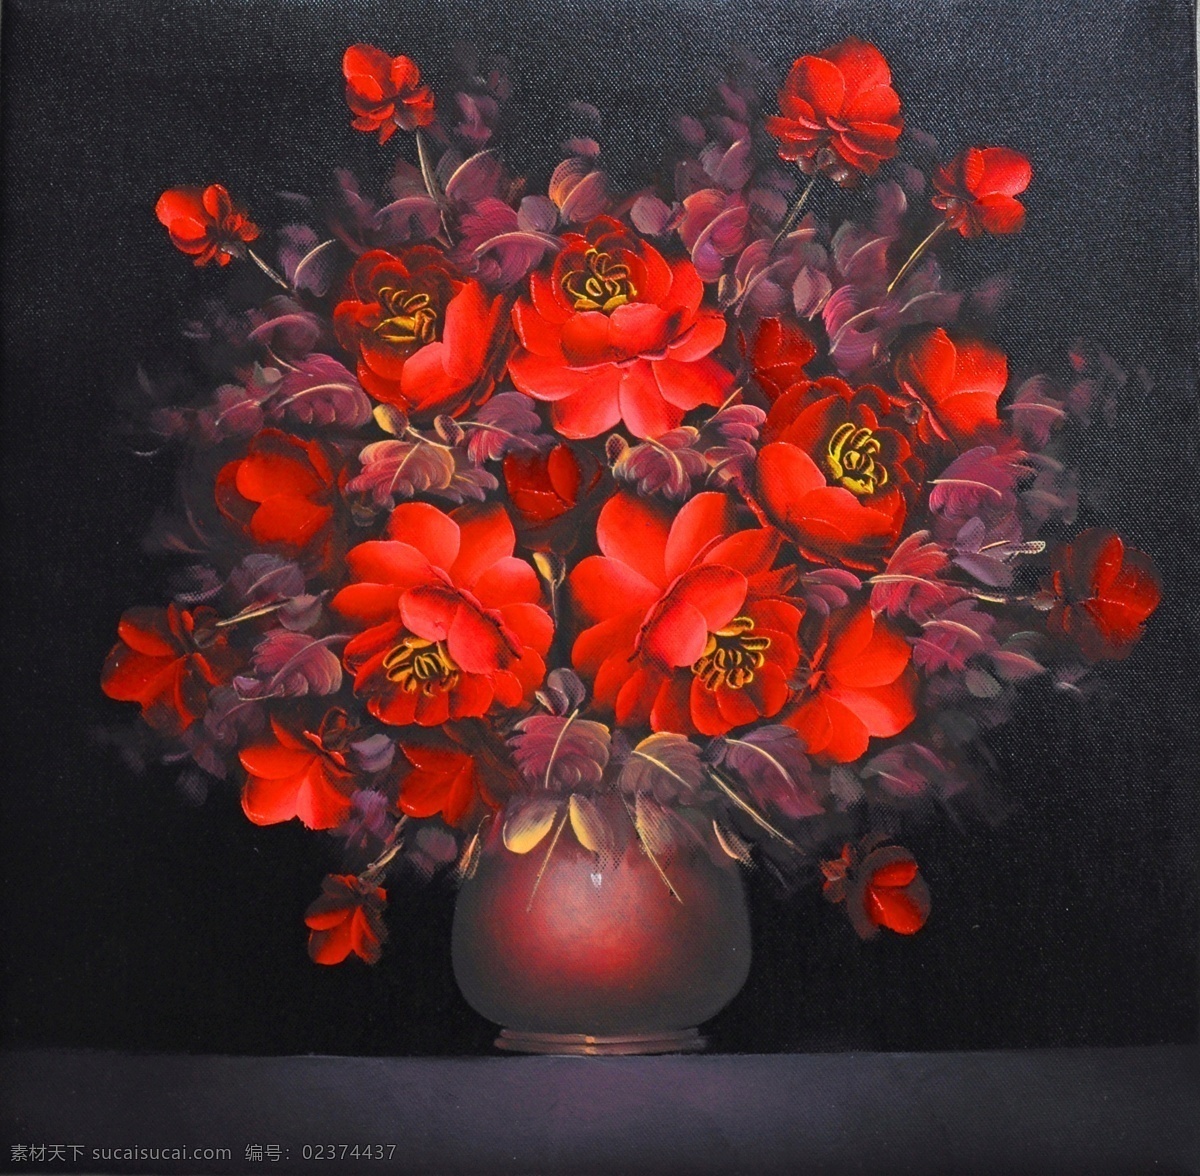 激情 红色 花朵 装饰画 红色花朵 无框画 热烈 喷绘 高清 共享 文化艺术 绘画书法